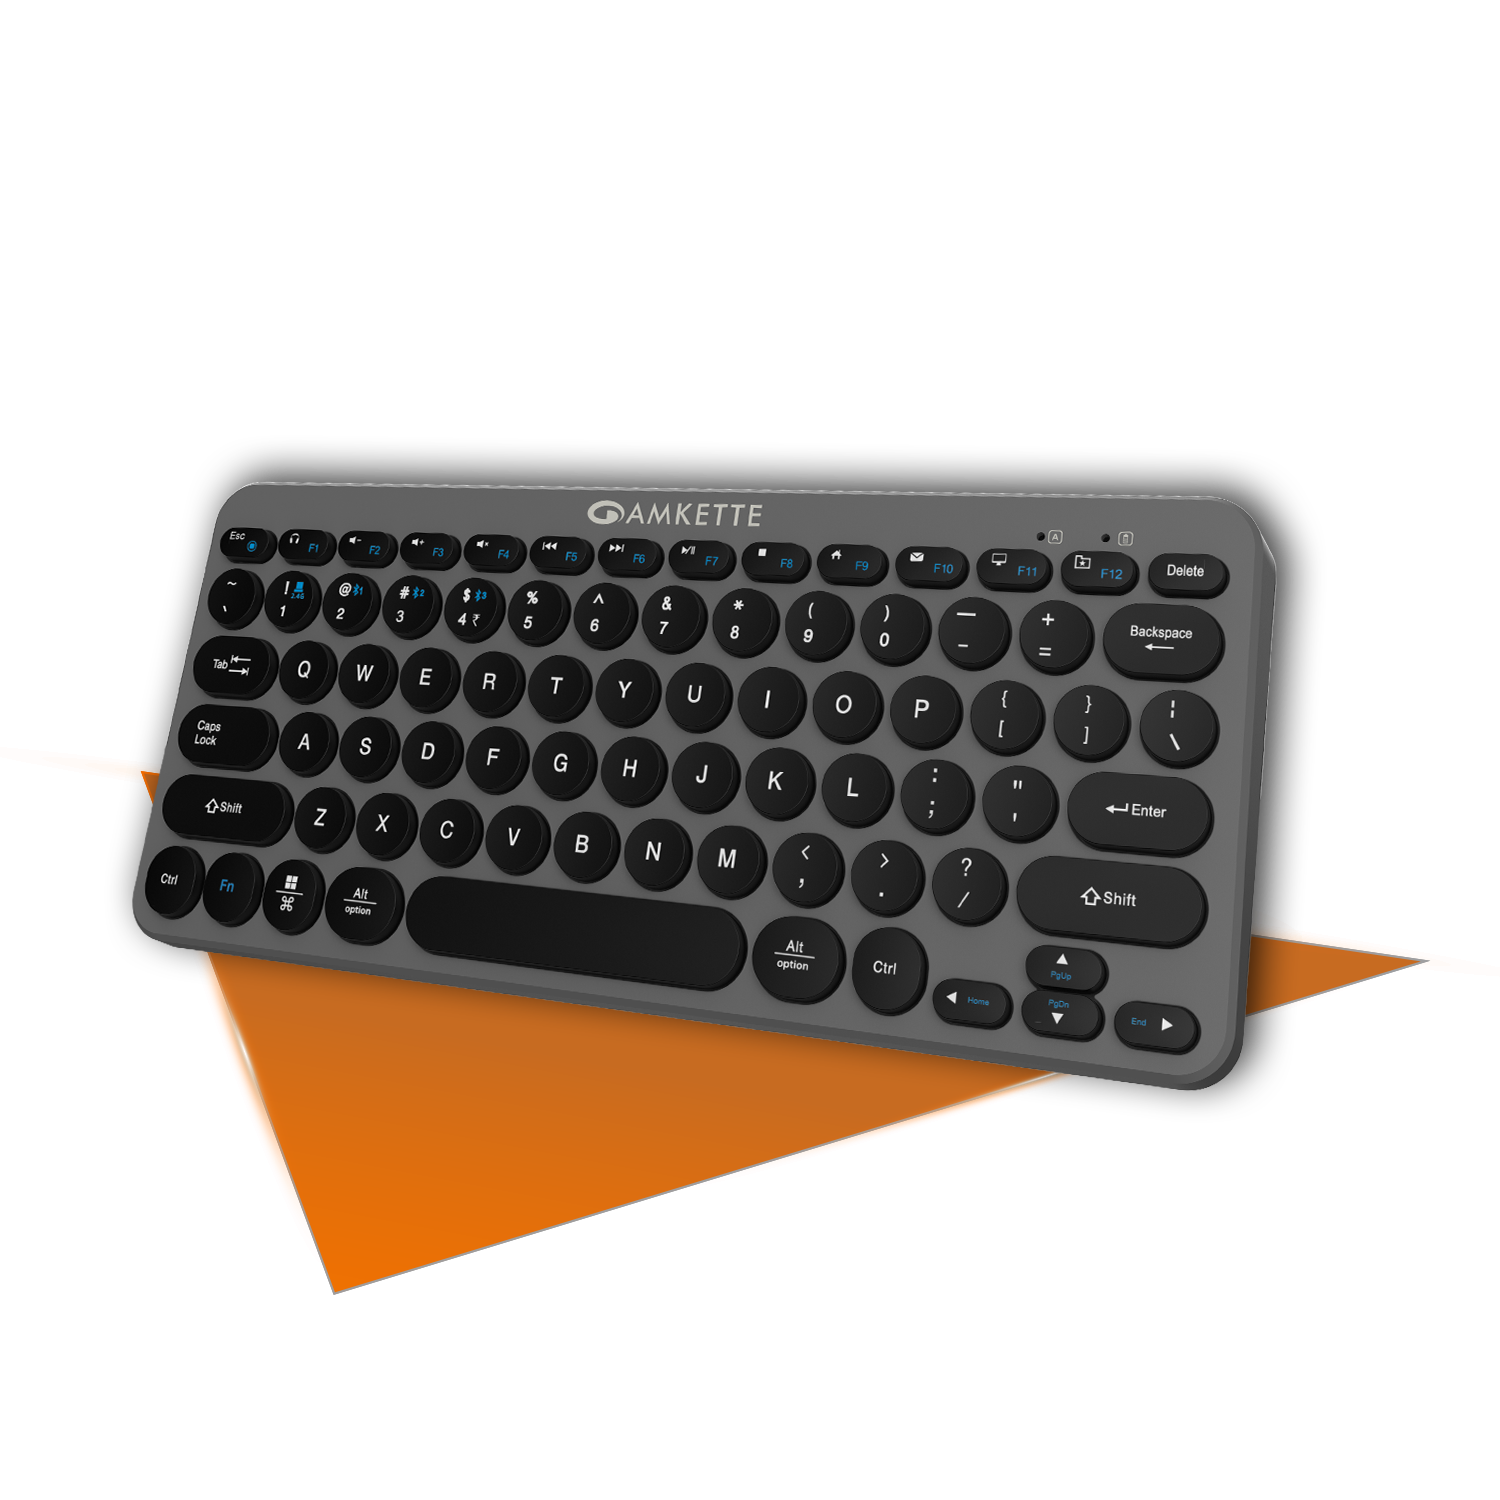 Wireless Keyboards